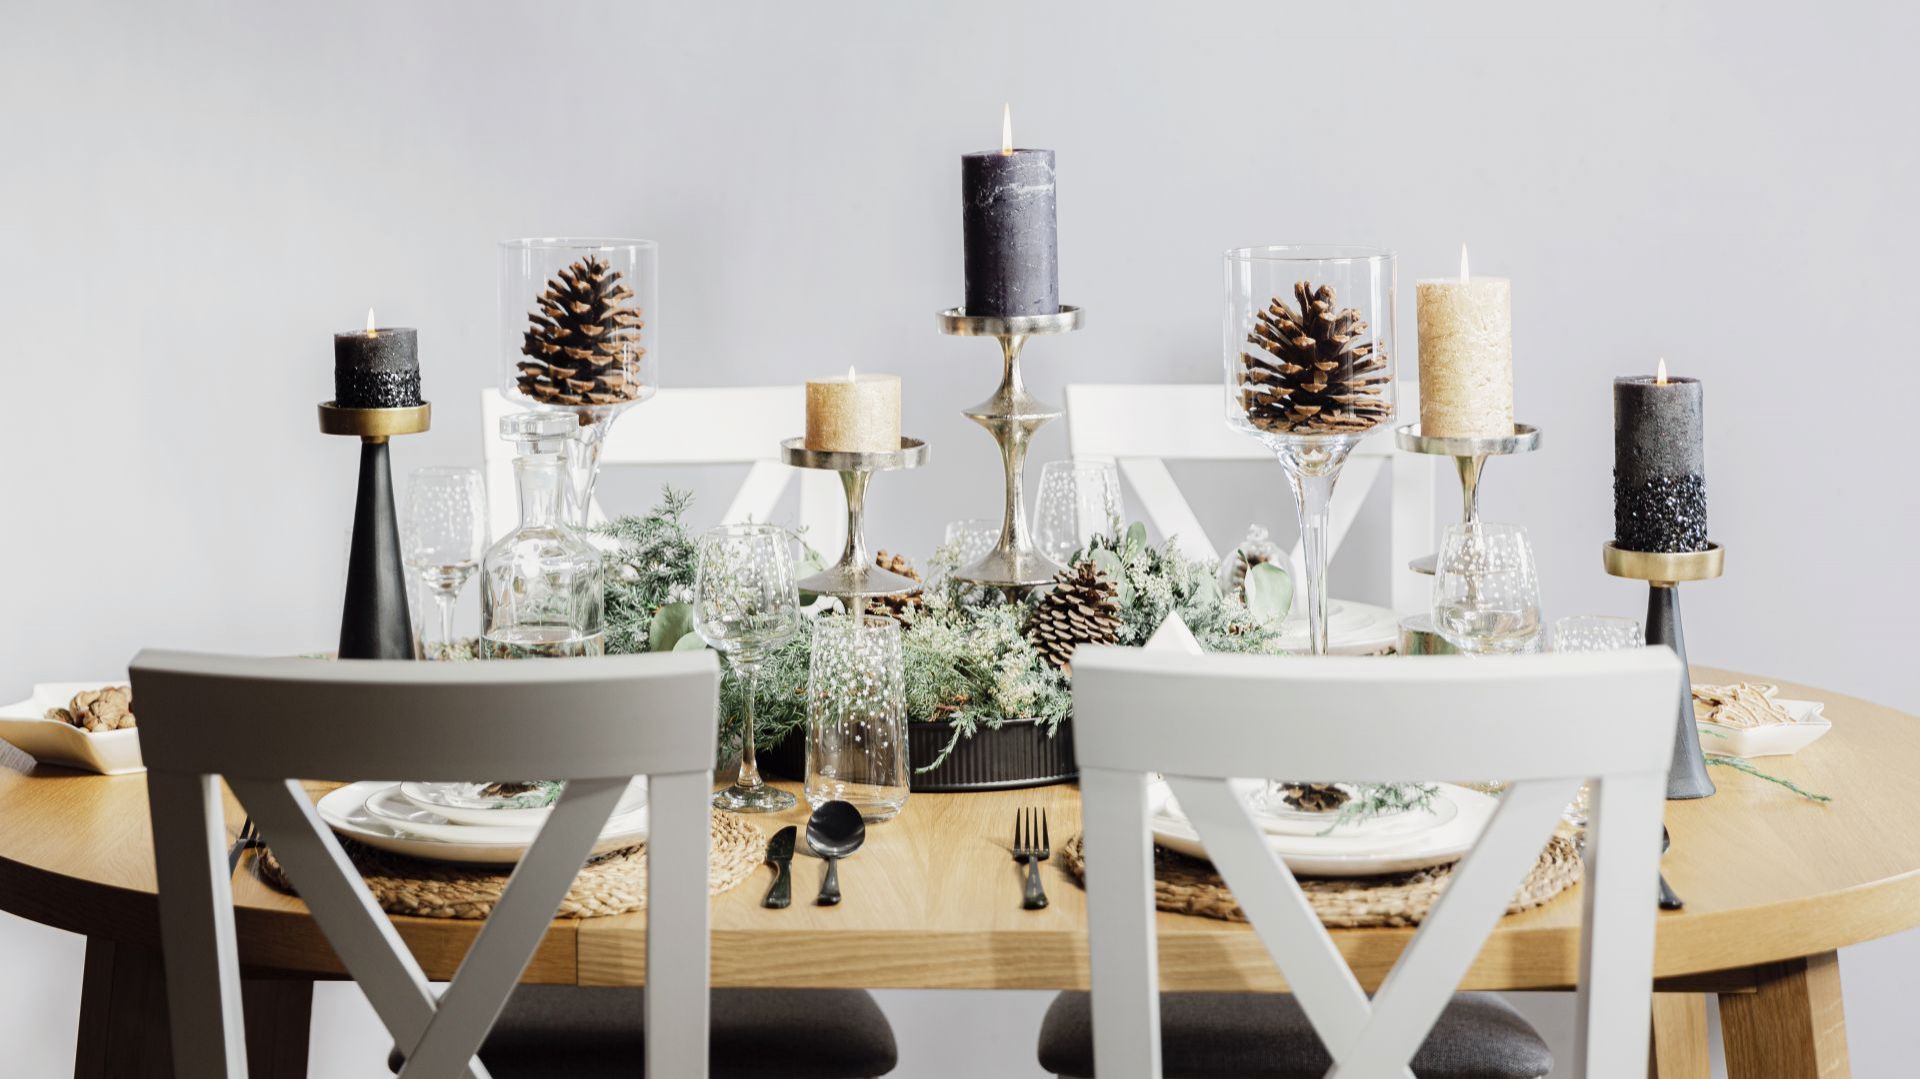 Świąteczny stół: 3 trendy na dekorację na Boże Narodzenie